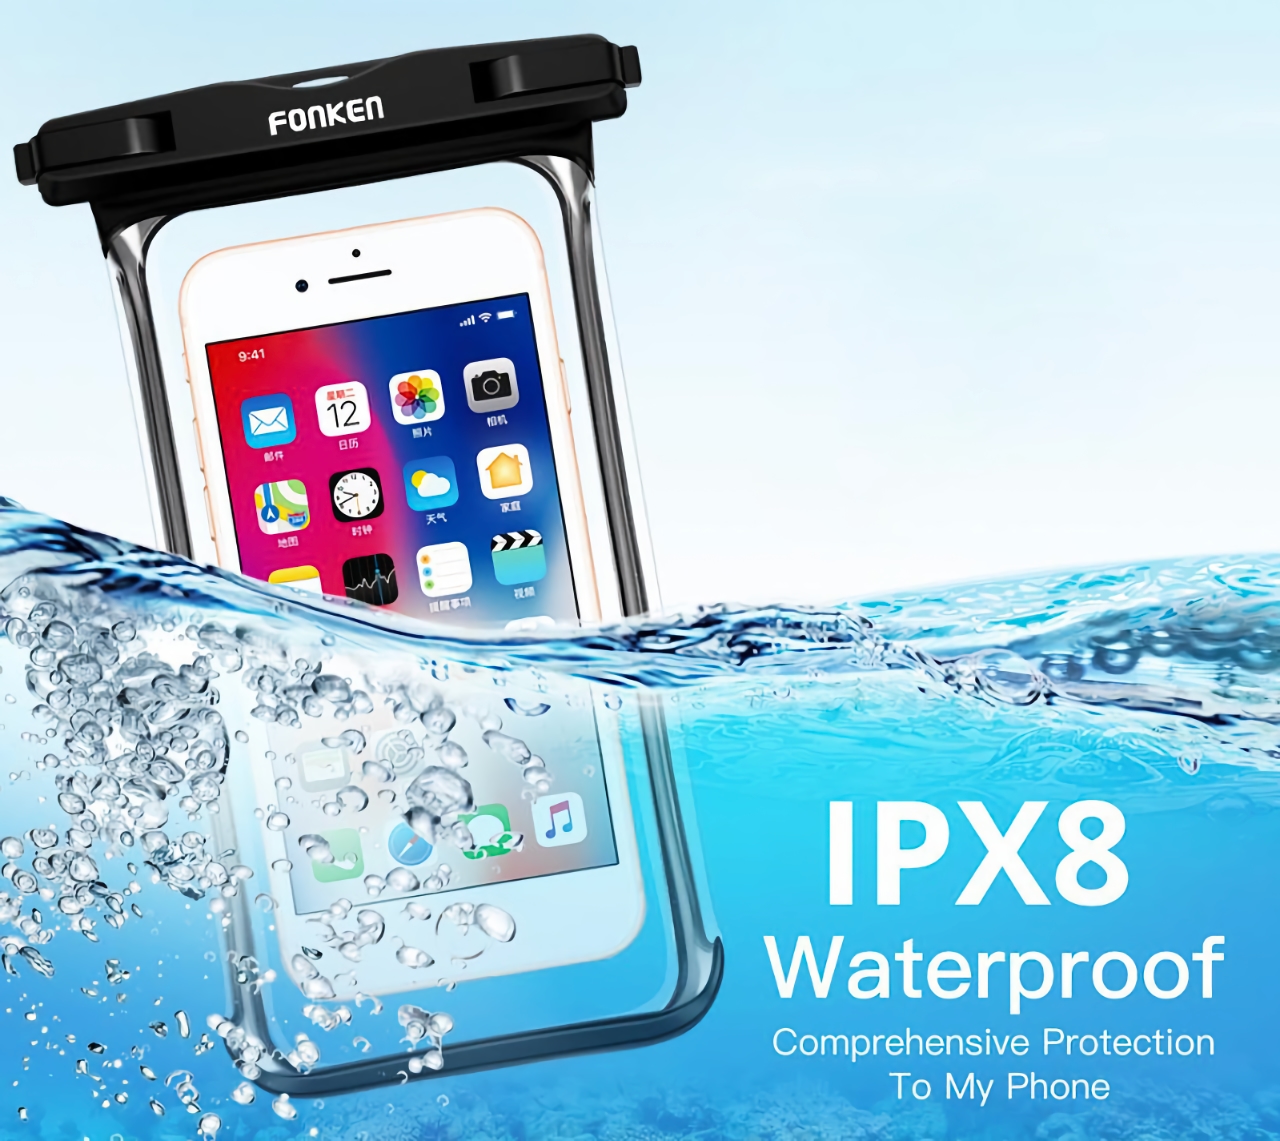 FONKEN IPX8 certified waterproof case for $3